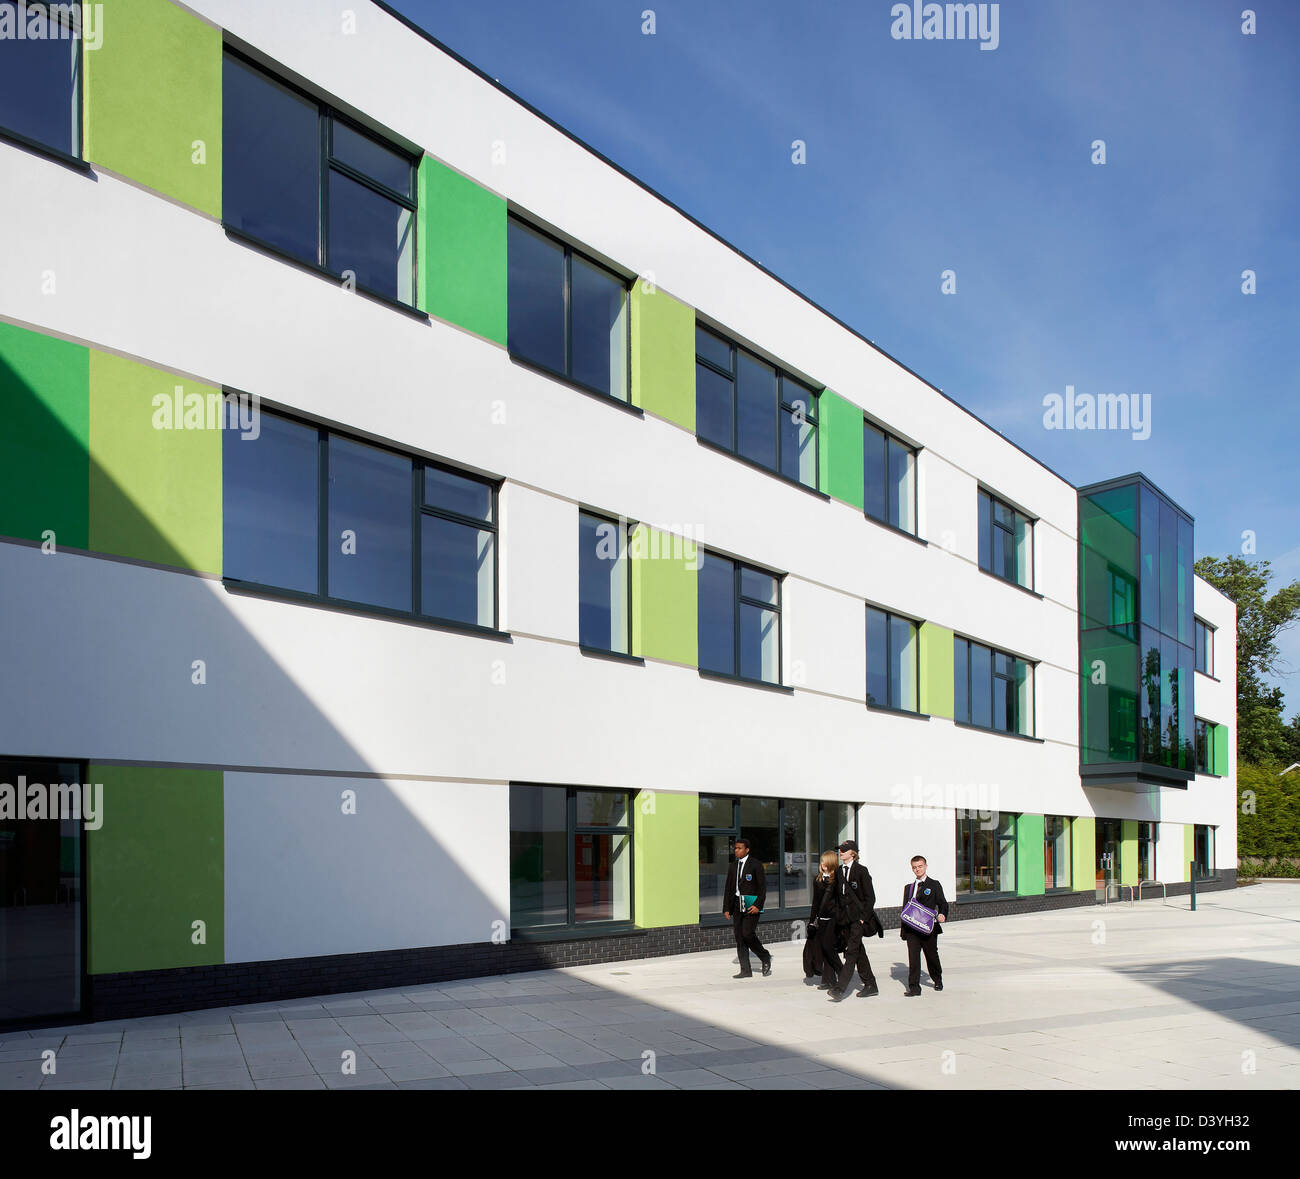 Oasis Academy, Coulsdon, Royaume-Uni. Architecte : Sheppard Robson, 2011. Vue de la façade avec des panneaux de couleur. Banque D'Images